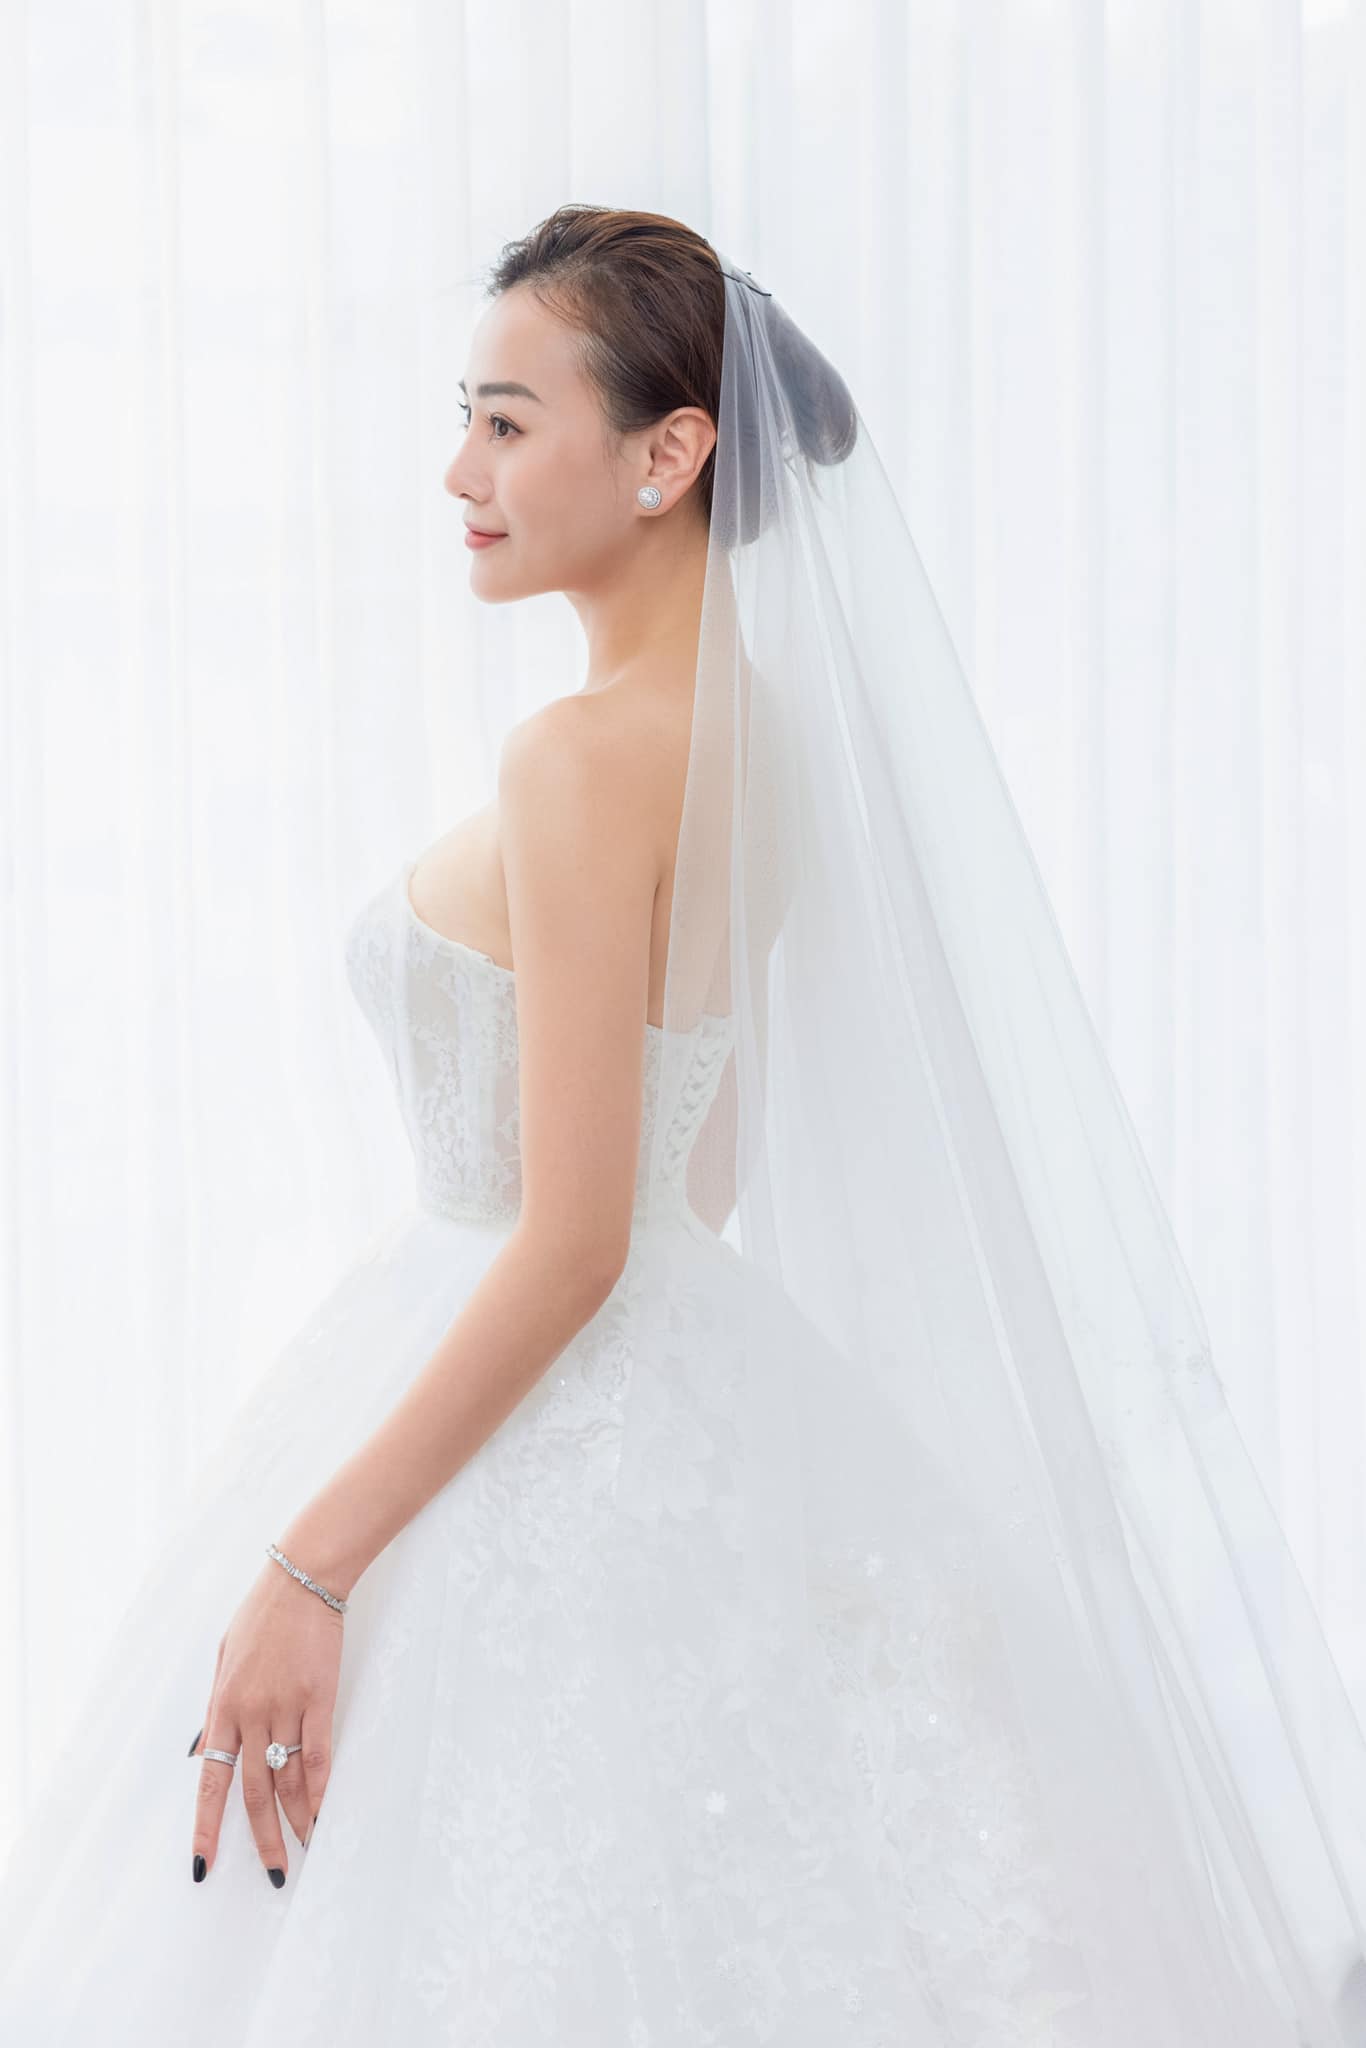 Diễn viên Phương Oanh đi thử váy cưới, ấn định tổ chức hôn lễ cổ tích với Shark Bình sau 2 tháng ăn hỏi - ảnh 3